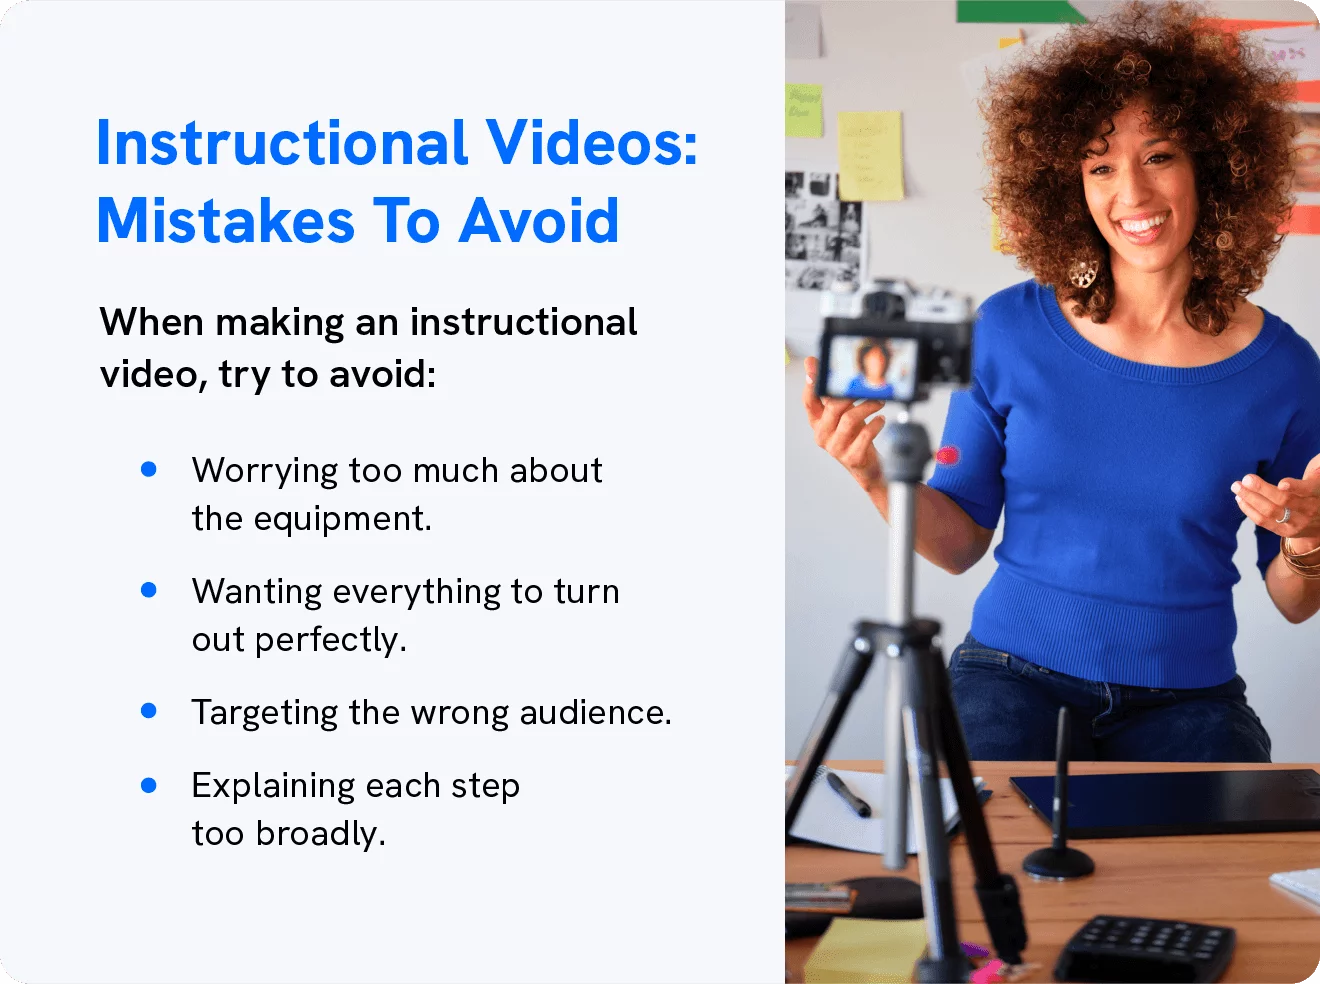 يظهر الرسم الأخطاء التي يجب تجنبها عند إنشاء مقاطع فيديو تعليمية.